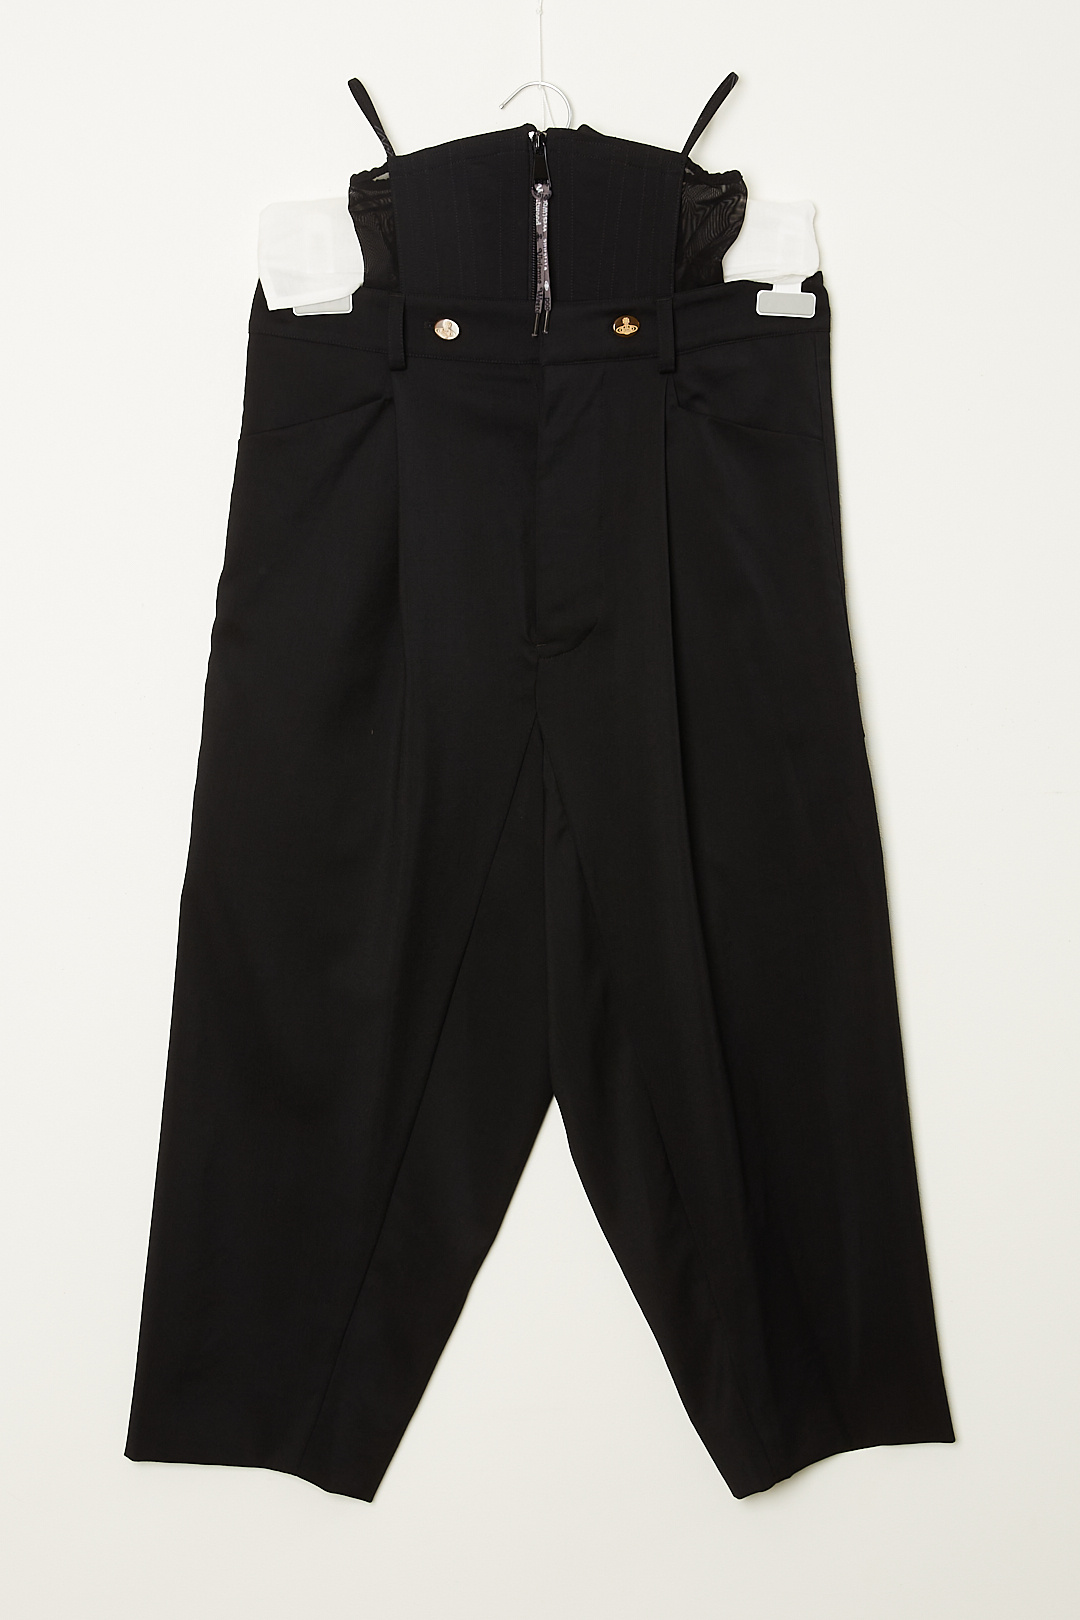 Vivienne Westwood men's linen dress pants trousers size 52 / Xl | eBay